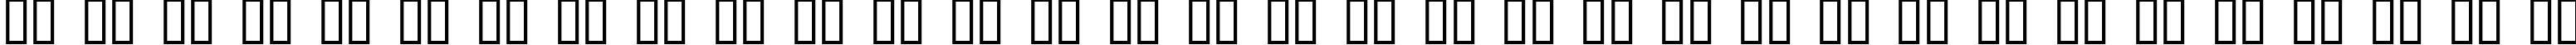 Пример написания русского алфавита шрифтом Dumbledor 1 3D